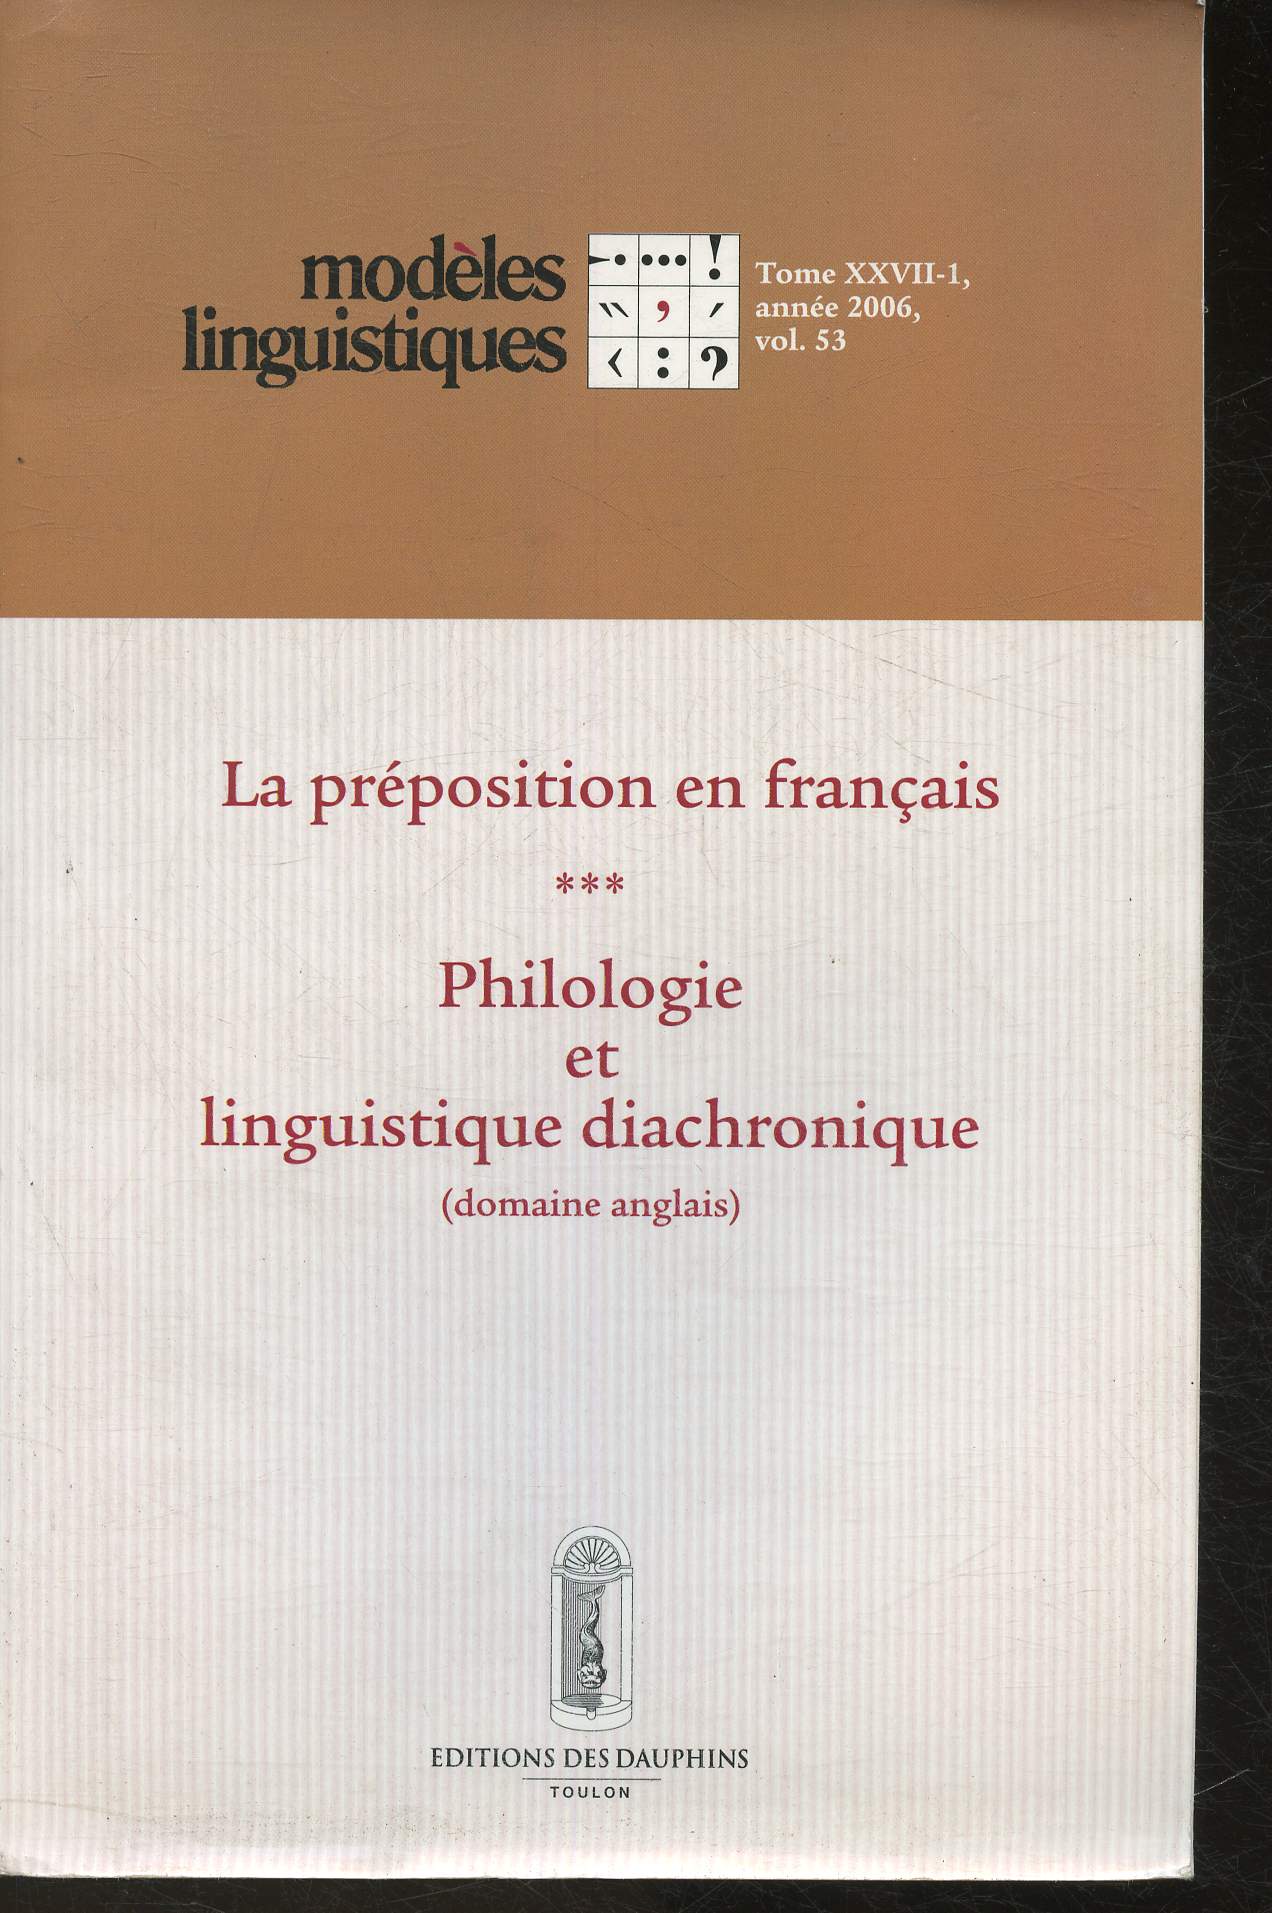 La prposition en Franais- Philosophie et linguistique diachronique (domaine anglais)- Modles linguistique revue semestrielle